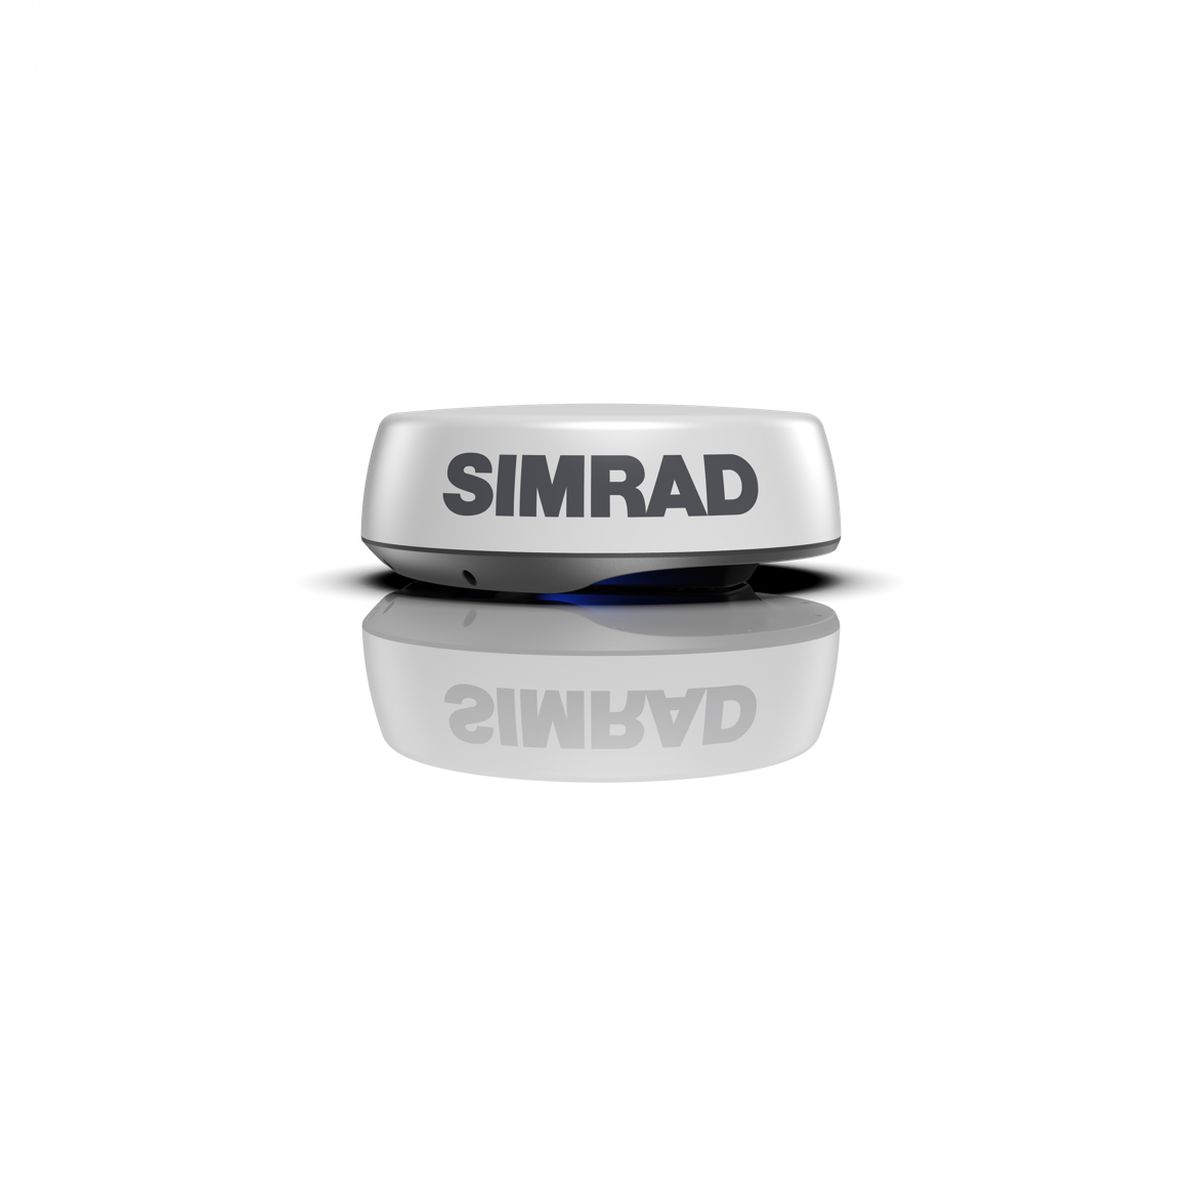 Simrad HALO24 radar